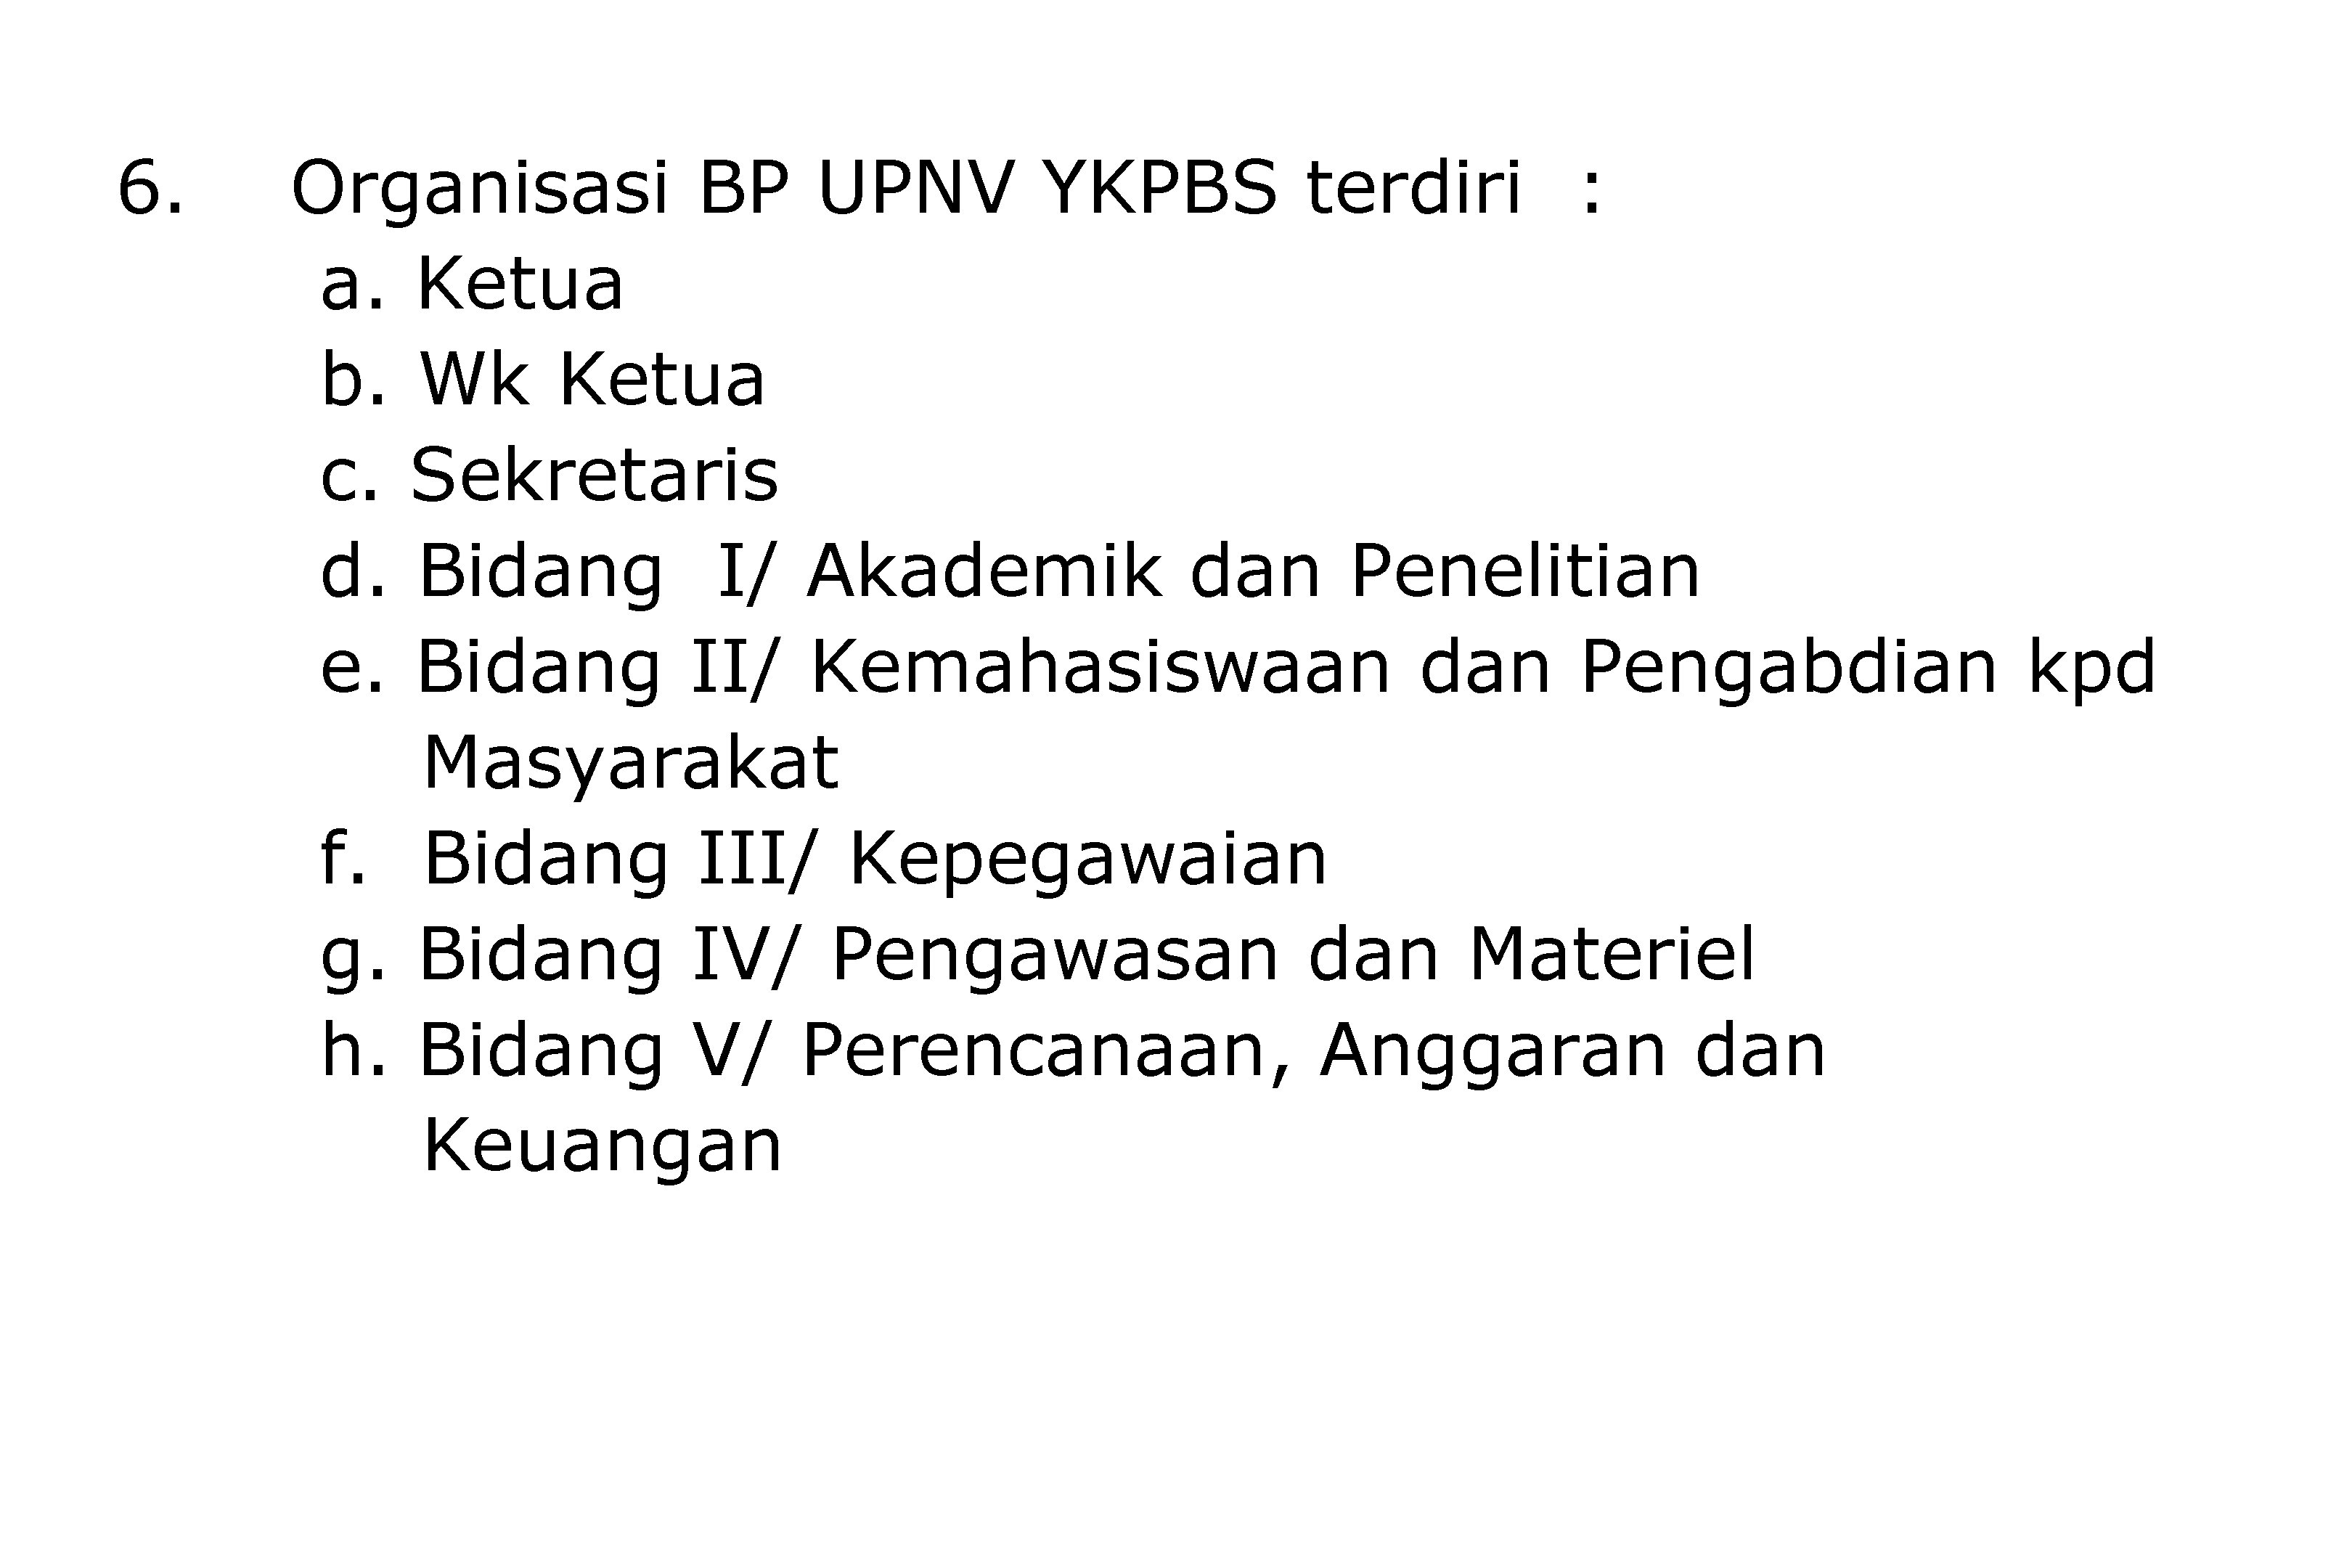 6. Organisasi BP UPNV YKPBS terdiri : a. Ketua b. Wk Ketua c. Sekretaris